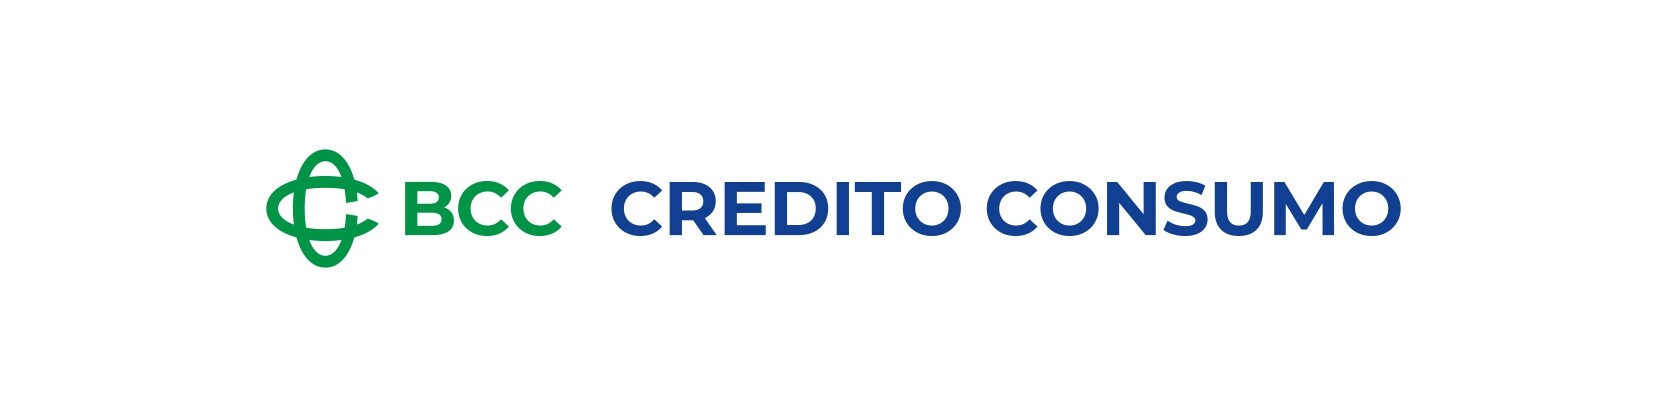 LOGO_BCC_CREDITO CONSUMO_COLORE_CMYK